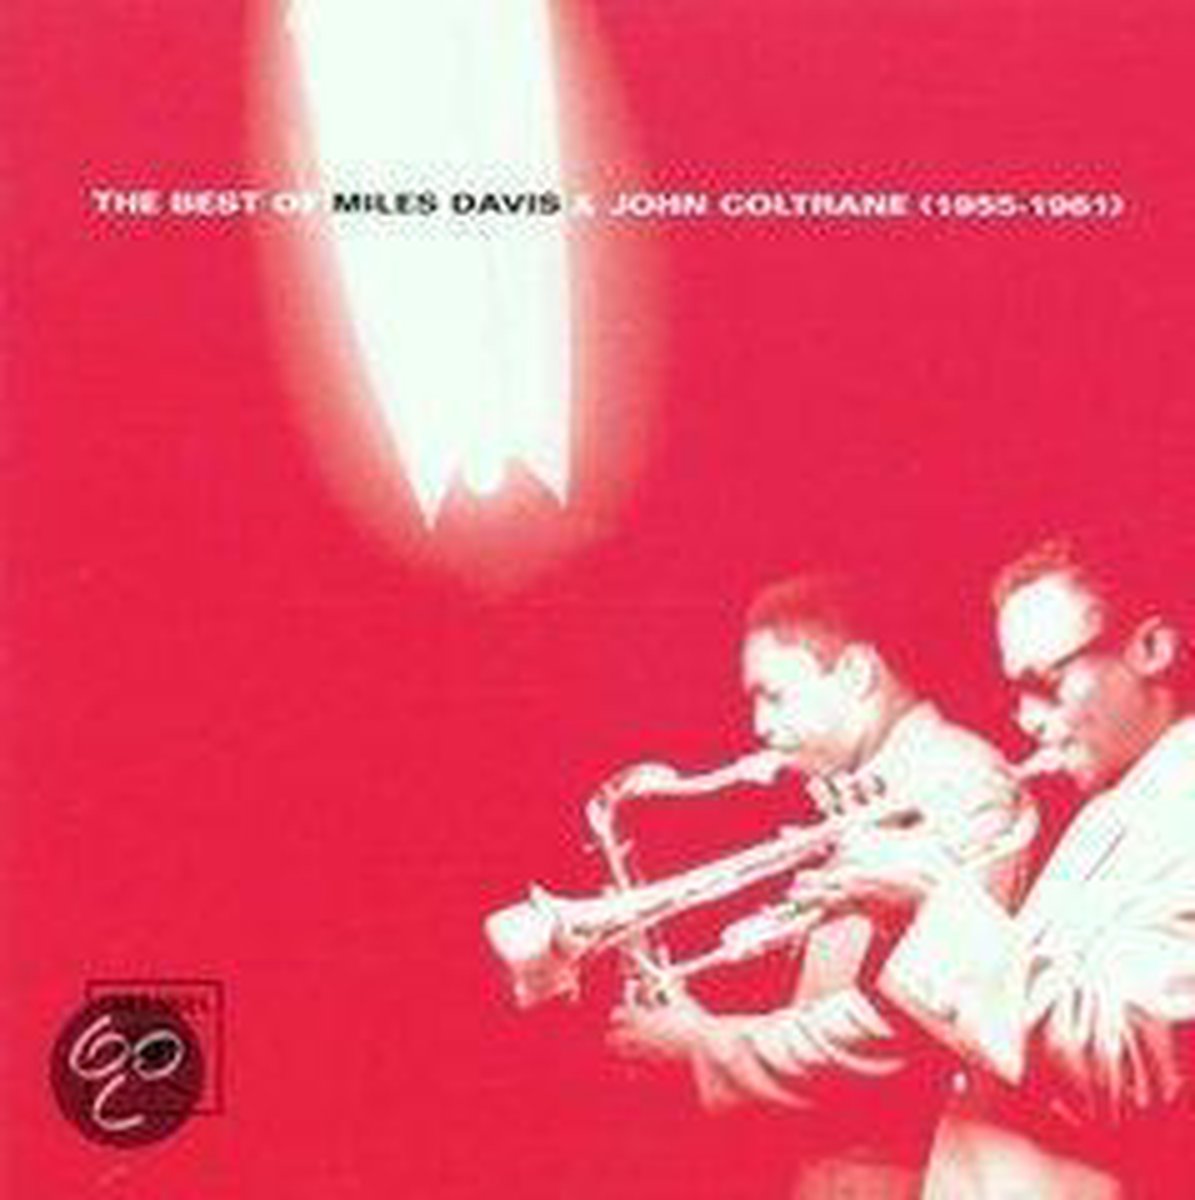 Best Of - Miles Davis & John Coltrane